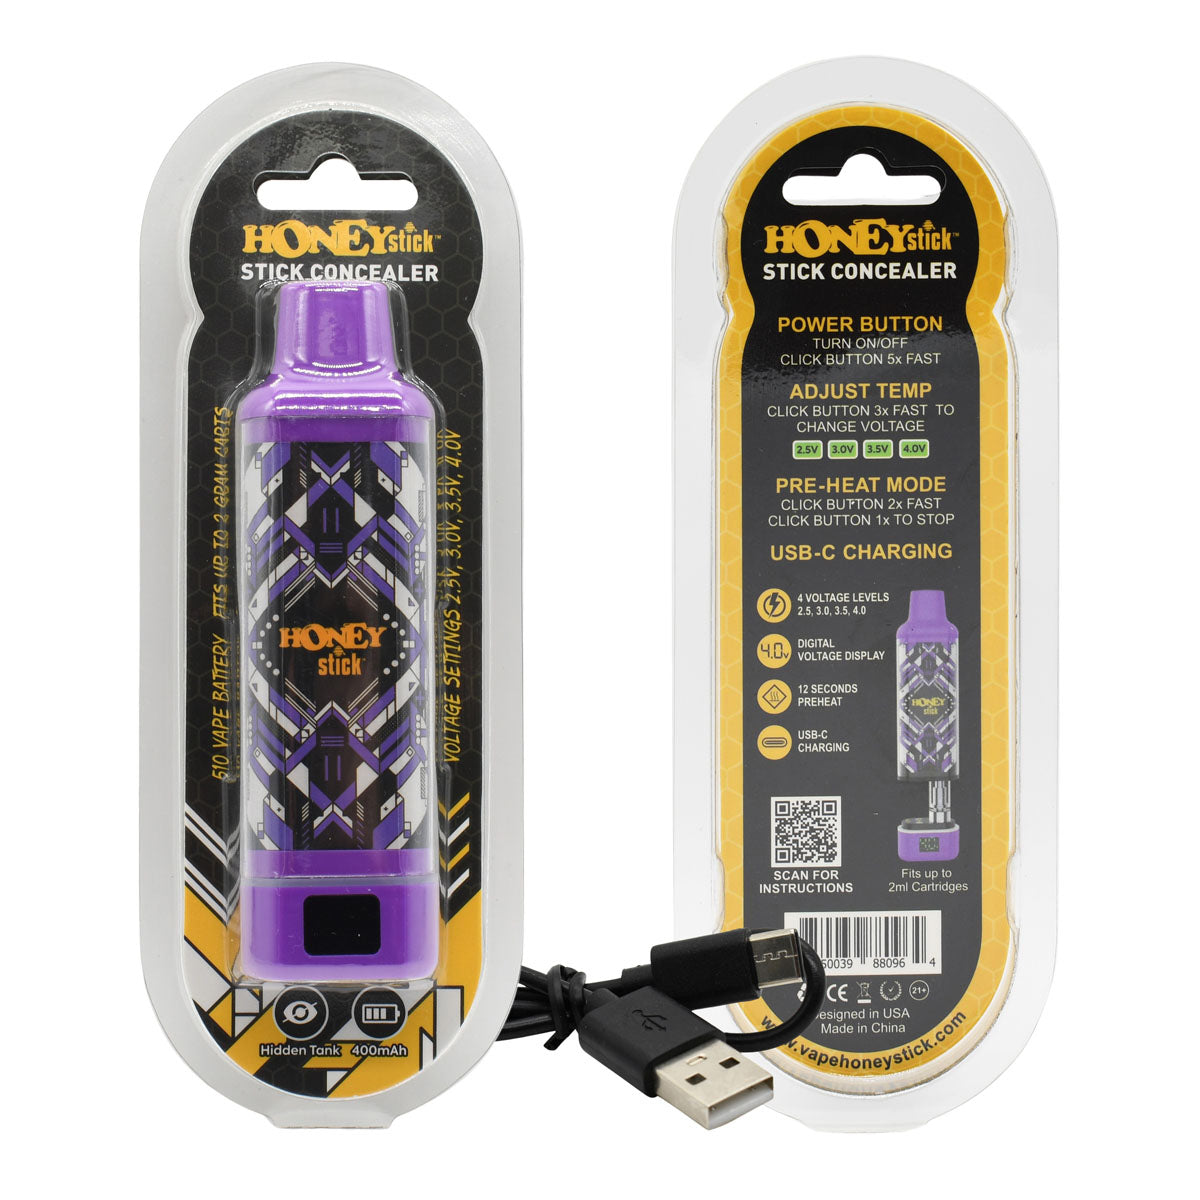 HoneyStick Cart Pen Vape Concealer - Autodraw Cartridge Battery Vape